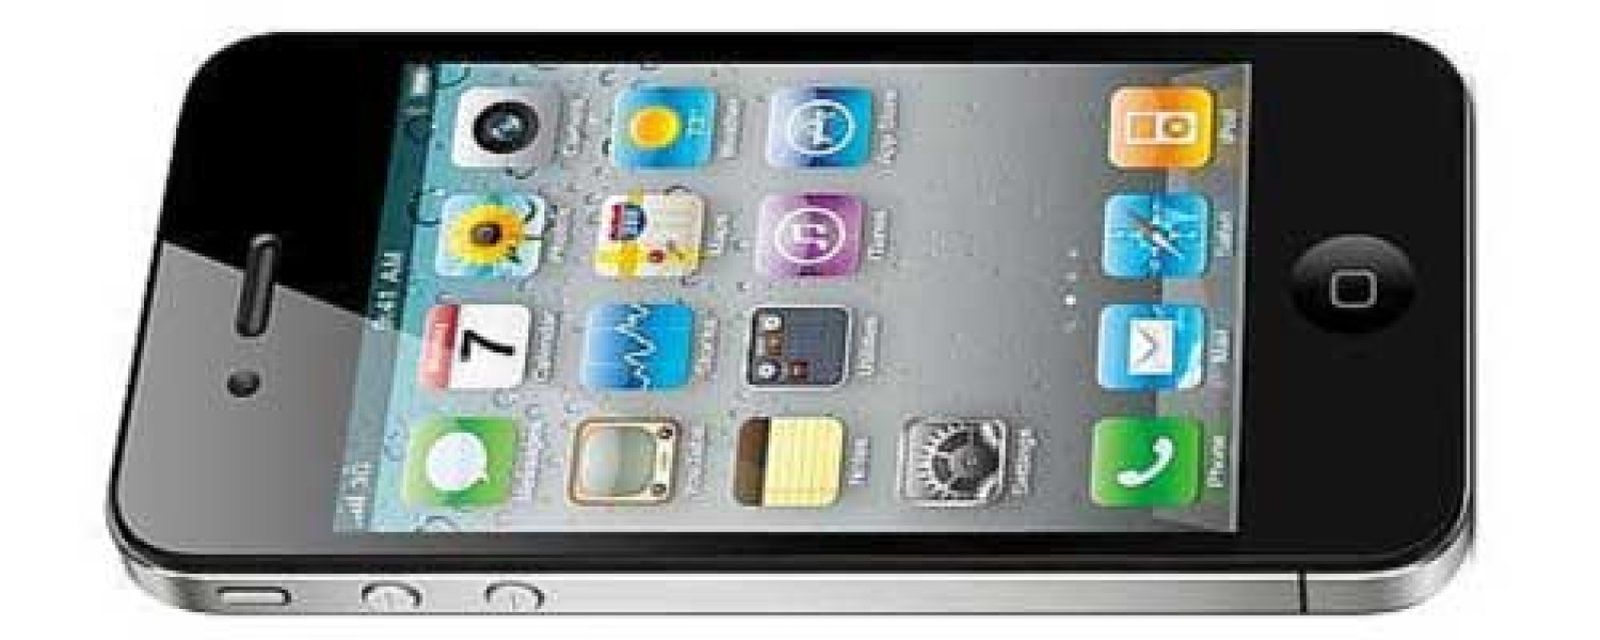 Foto: El iPhone 5 tendrá una pantalla de 4 pulgadas para competir con el Galaxy S3